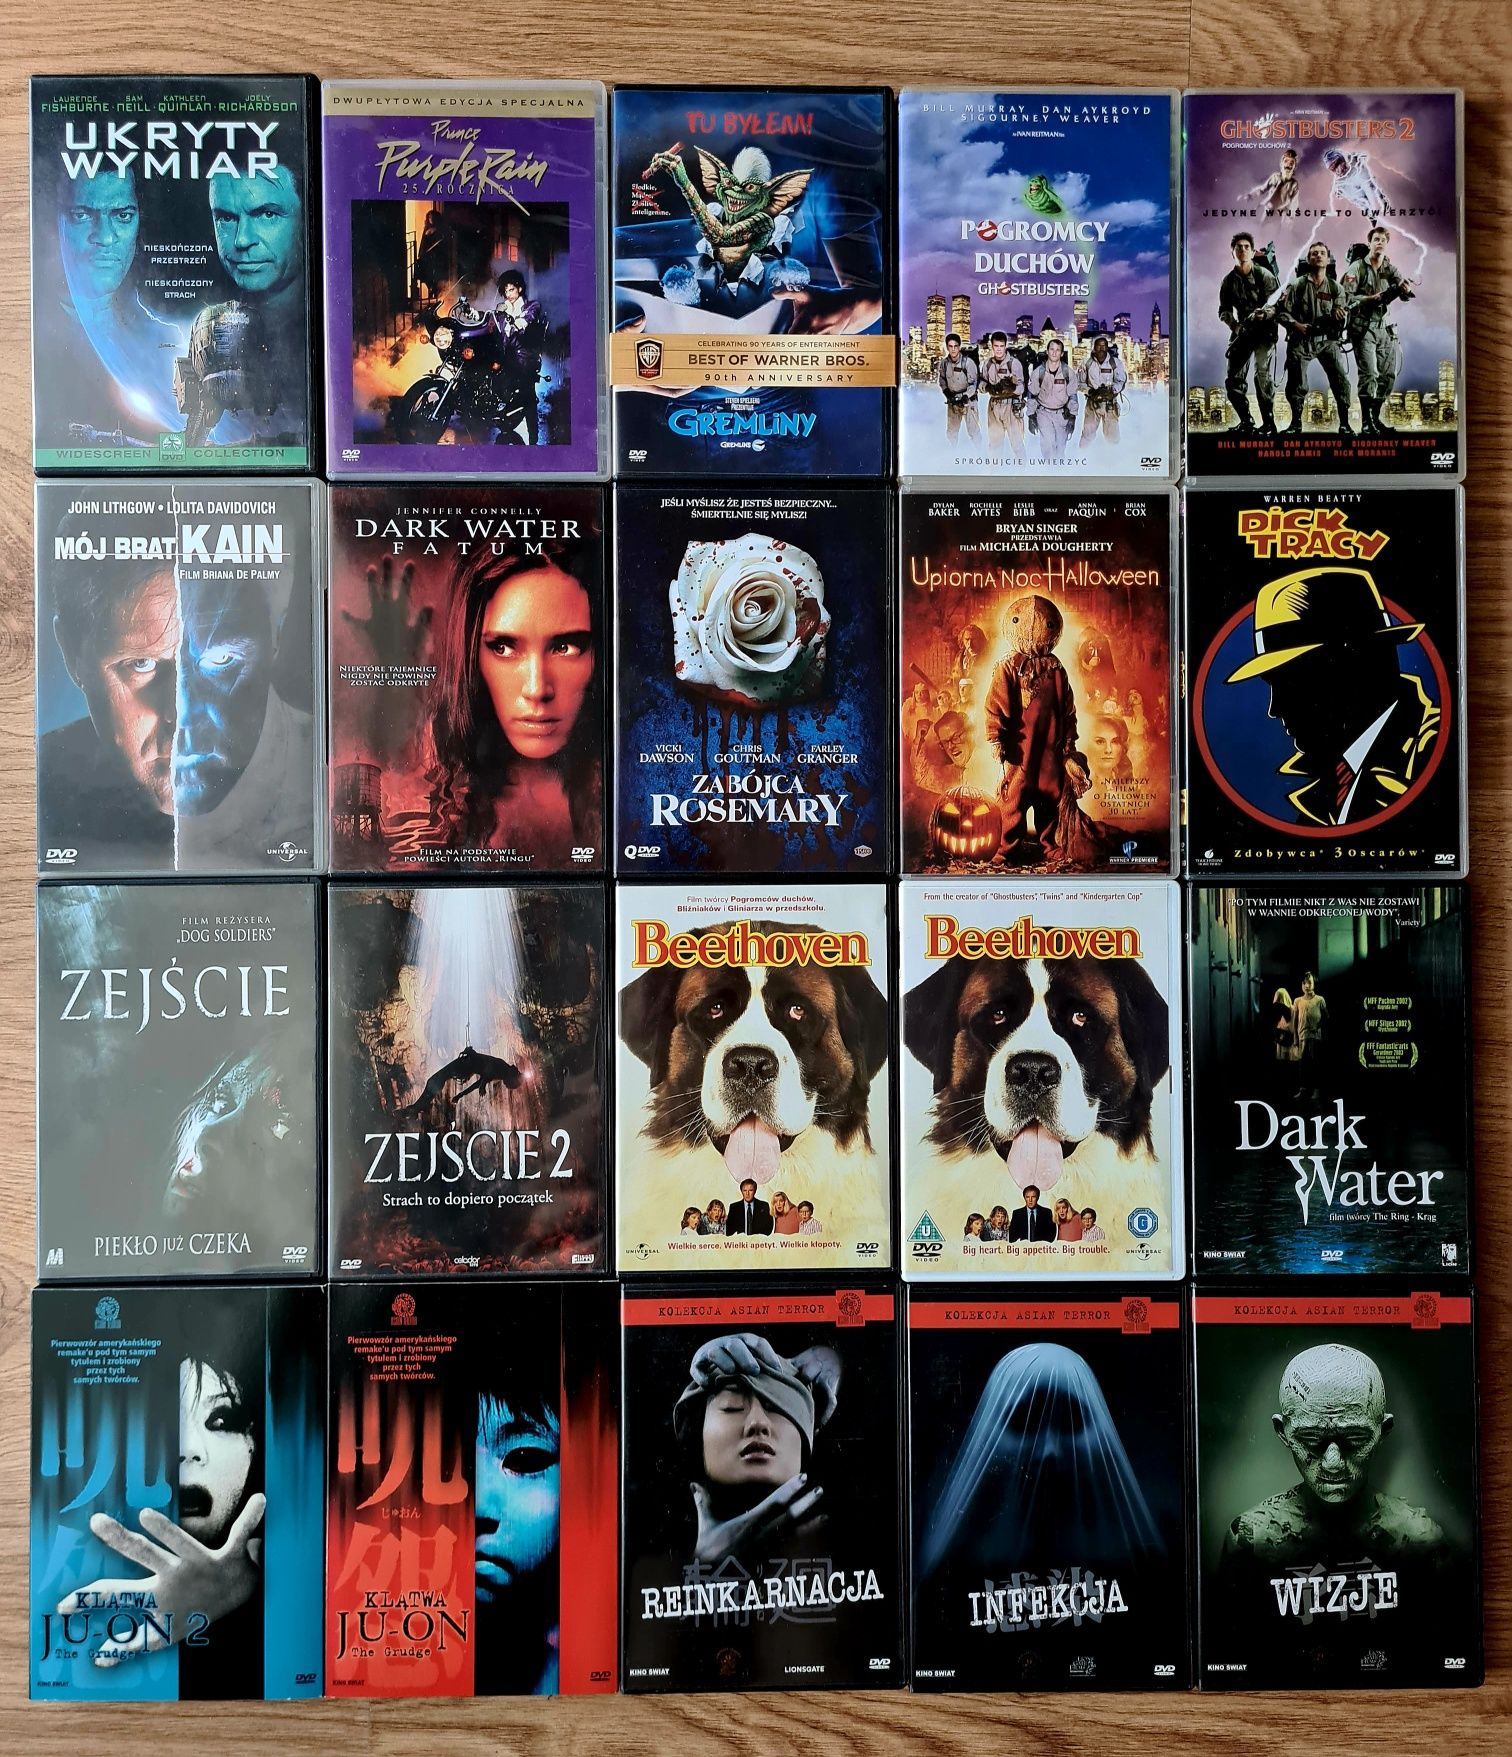 DVD: Żołnierze Kosmosu, Laleczka Chucky, Martwe Zło, Gremliny,the Ring